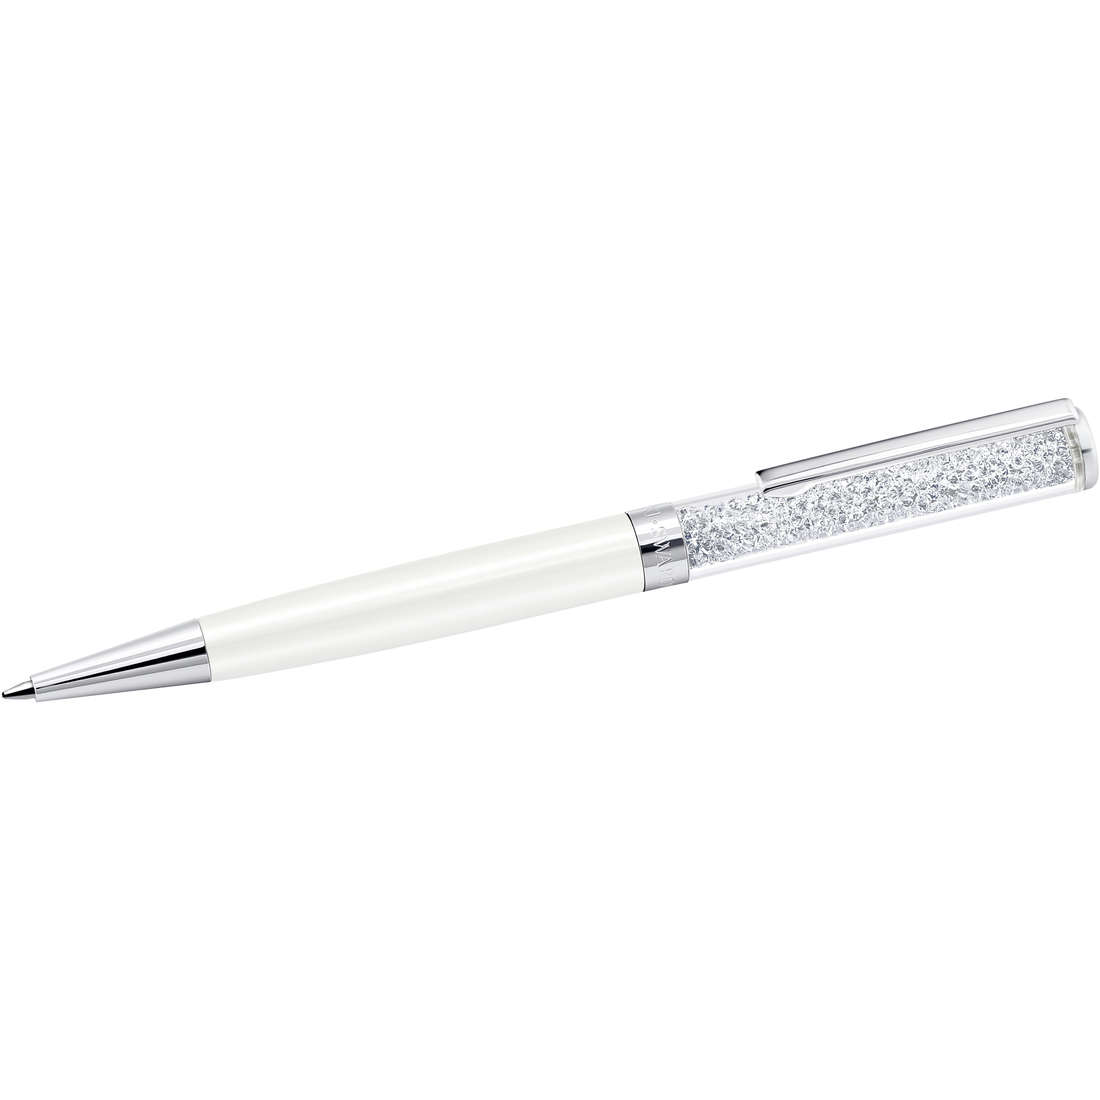 Stift Kugelschreiber Swarovski Crystalline da frau 5224392